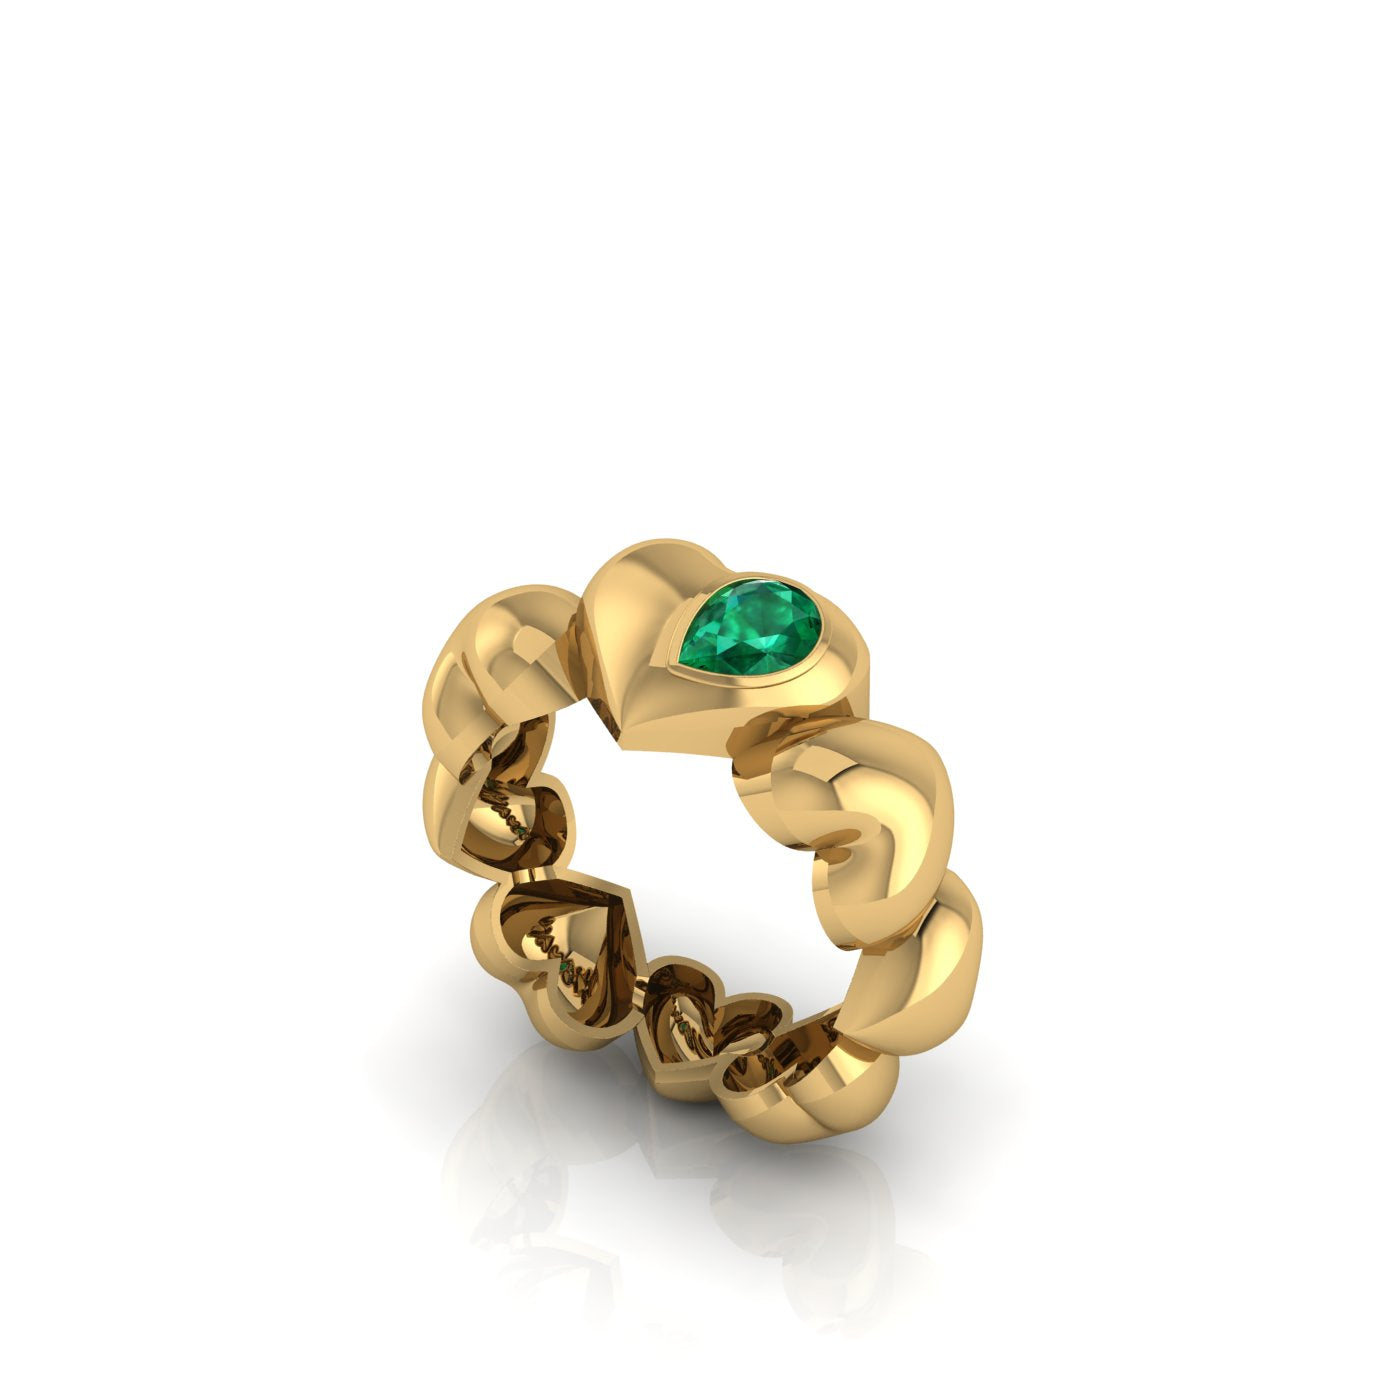 Ditsuhi Puff Heart Ring with Natural Green Peridot/Ուռուցիկ սրտերով և բնական պերիդոտ քարով մատանի